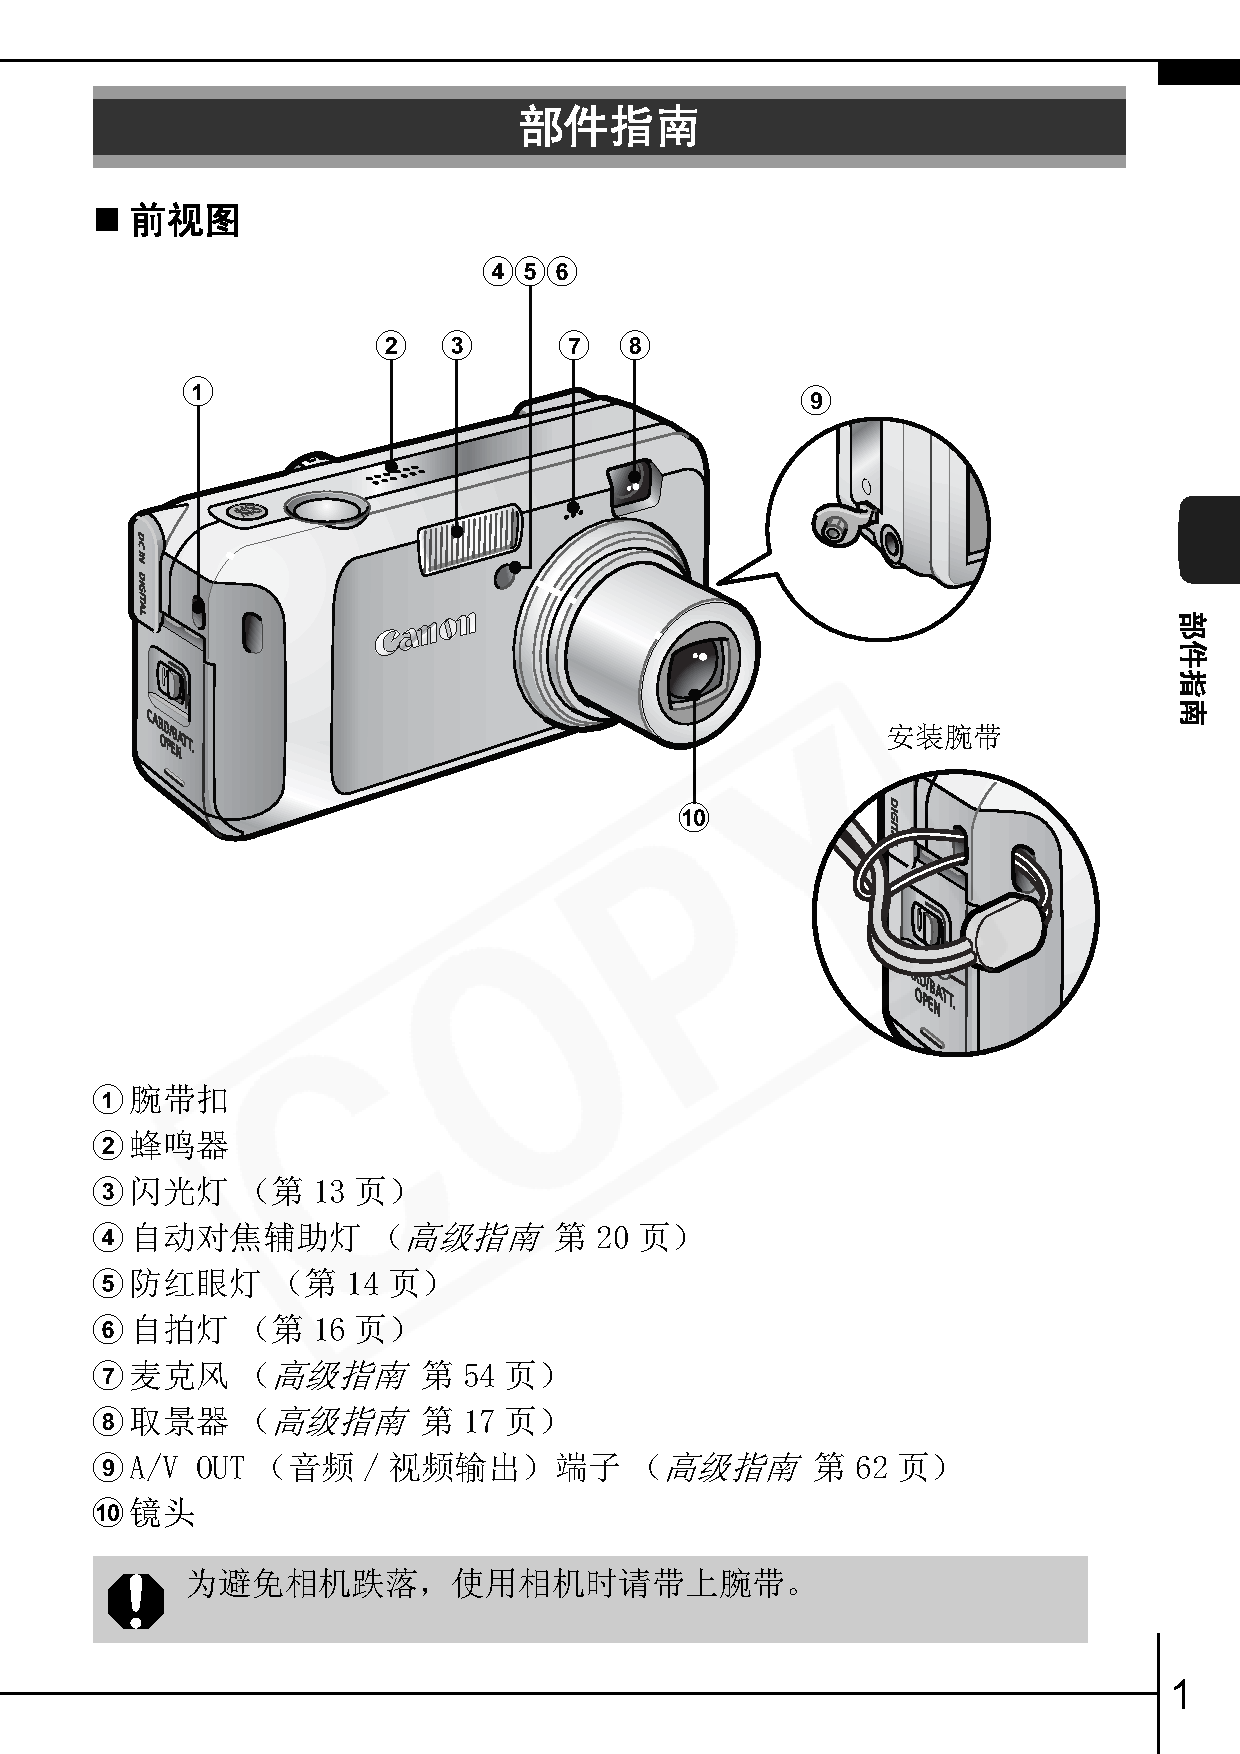 佳能 Canon PowerShot A460 基础使用指南 第2页